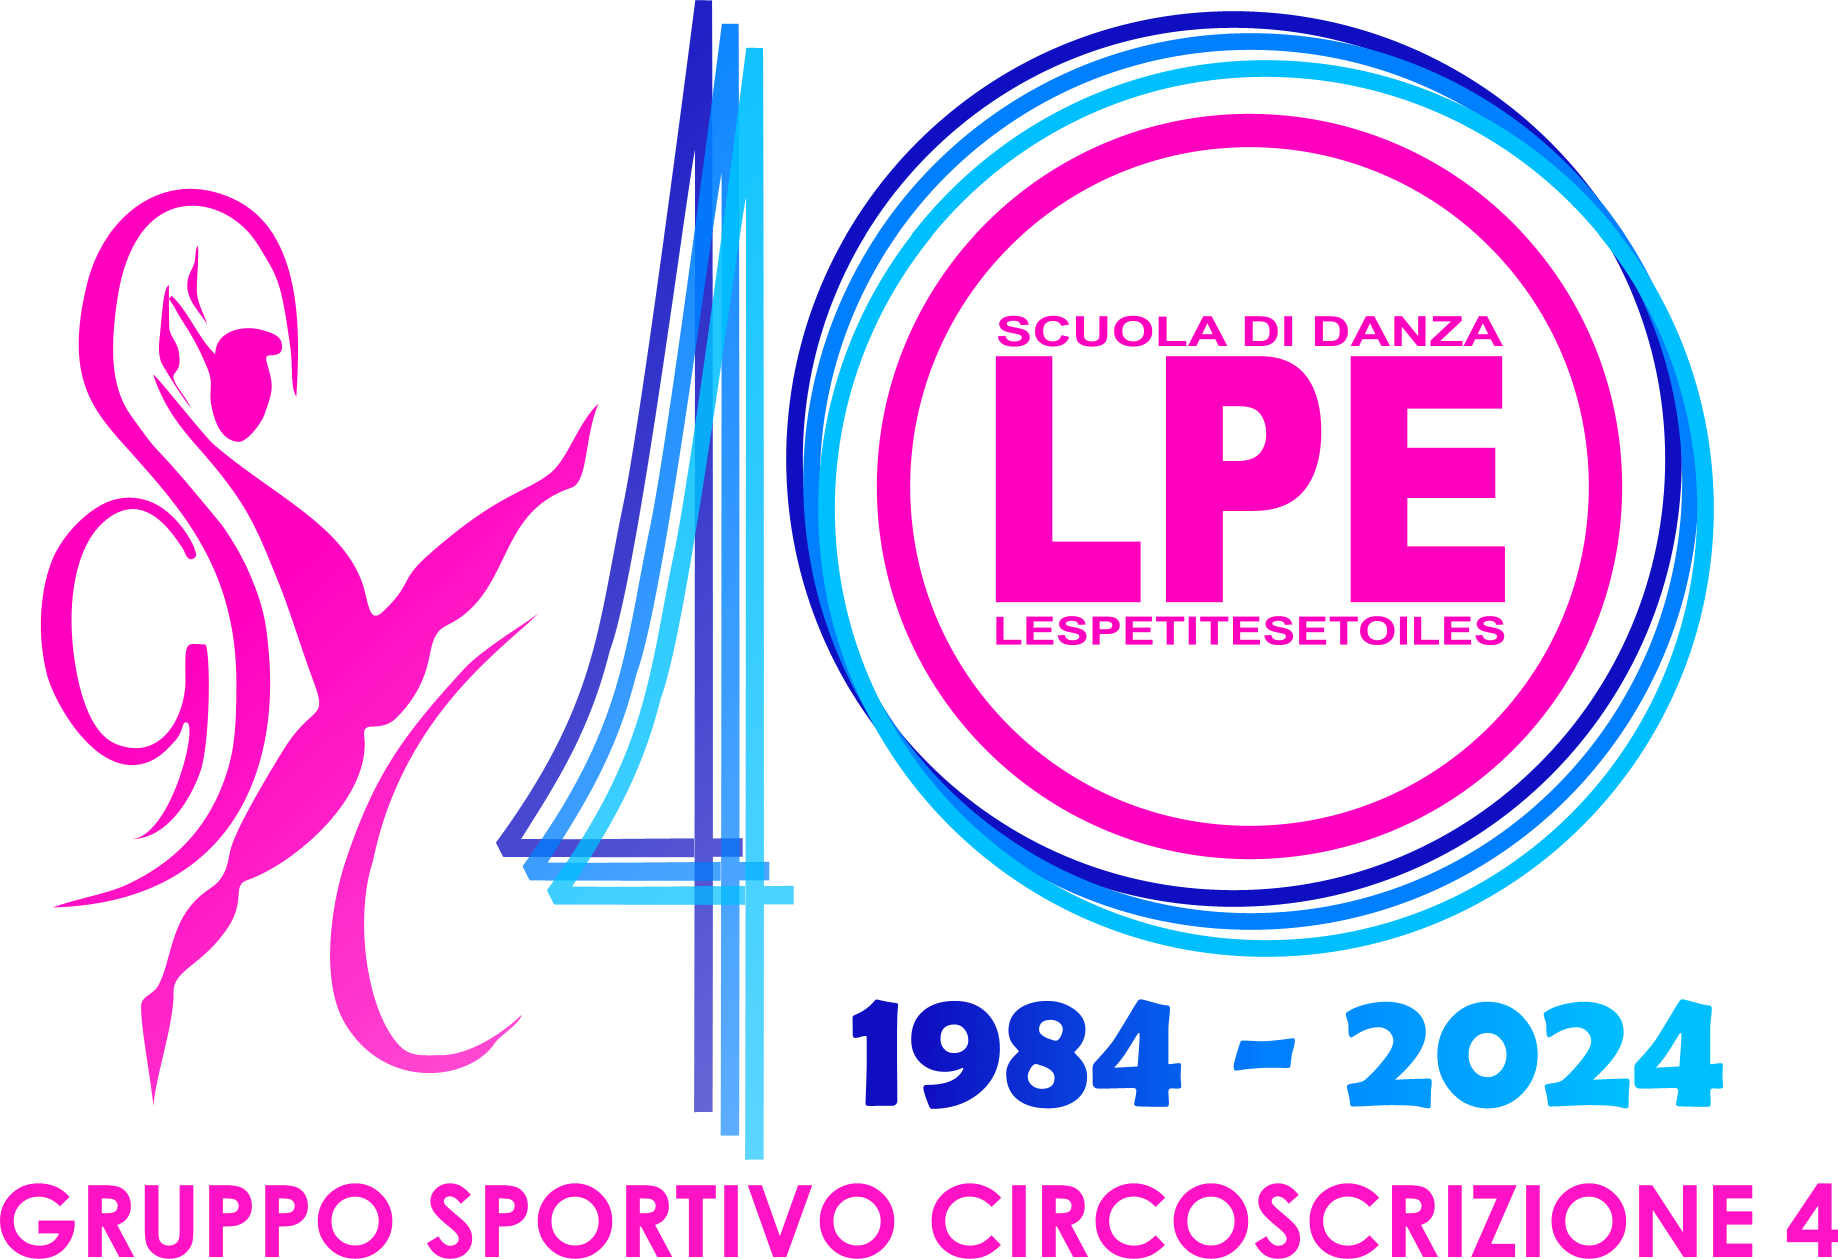 Gruppo Sportivo Circoscrizione 4